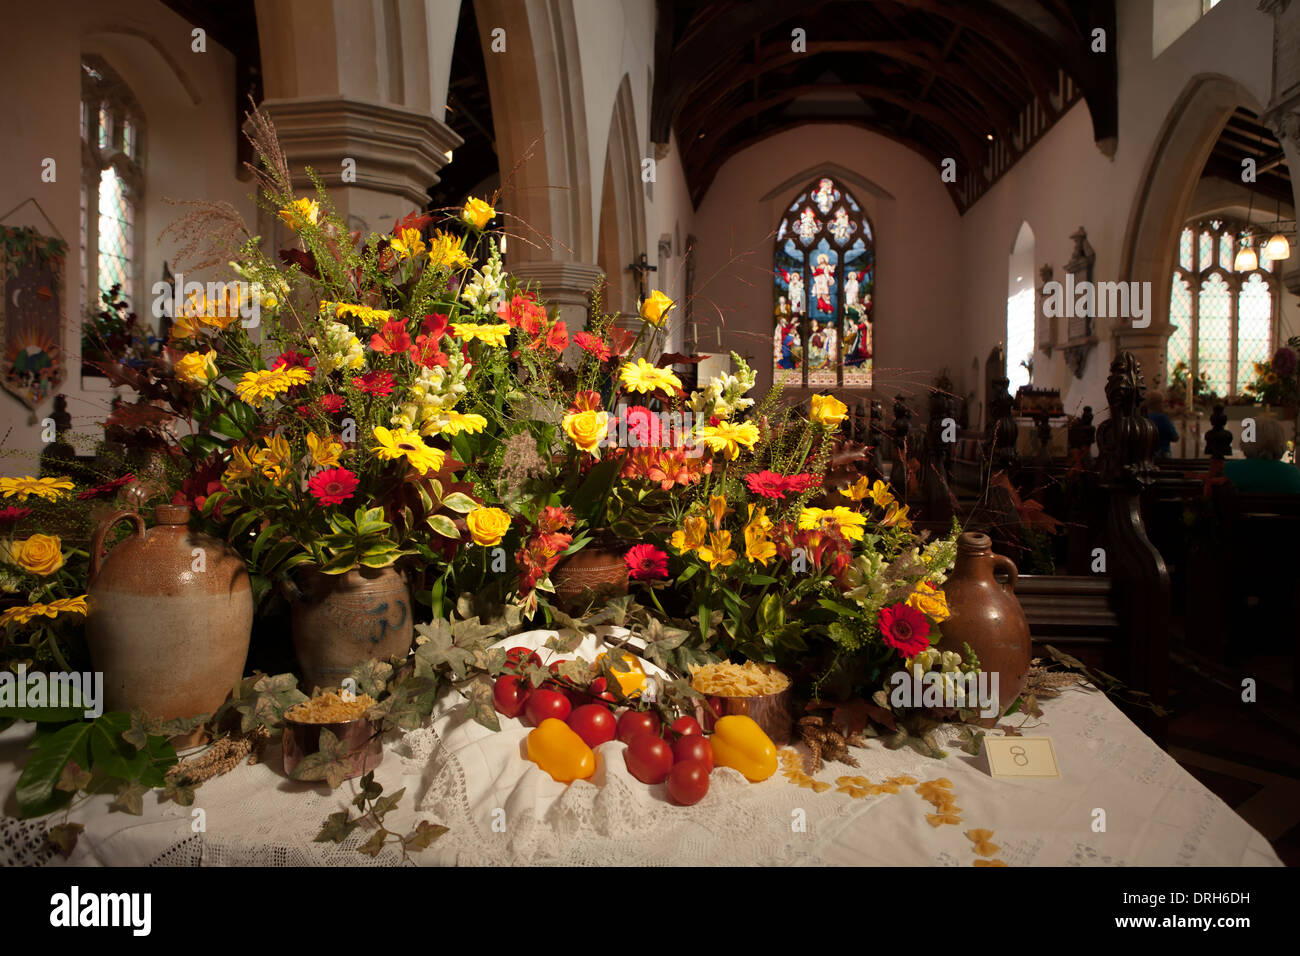 Arrangement de fleurs à thème italien en anglais église de campagne au Harvest Festival Banque D'Images